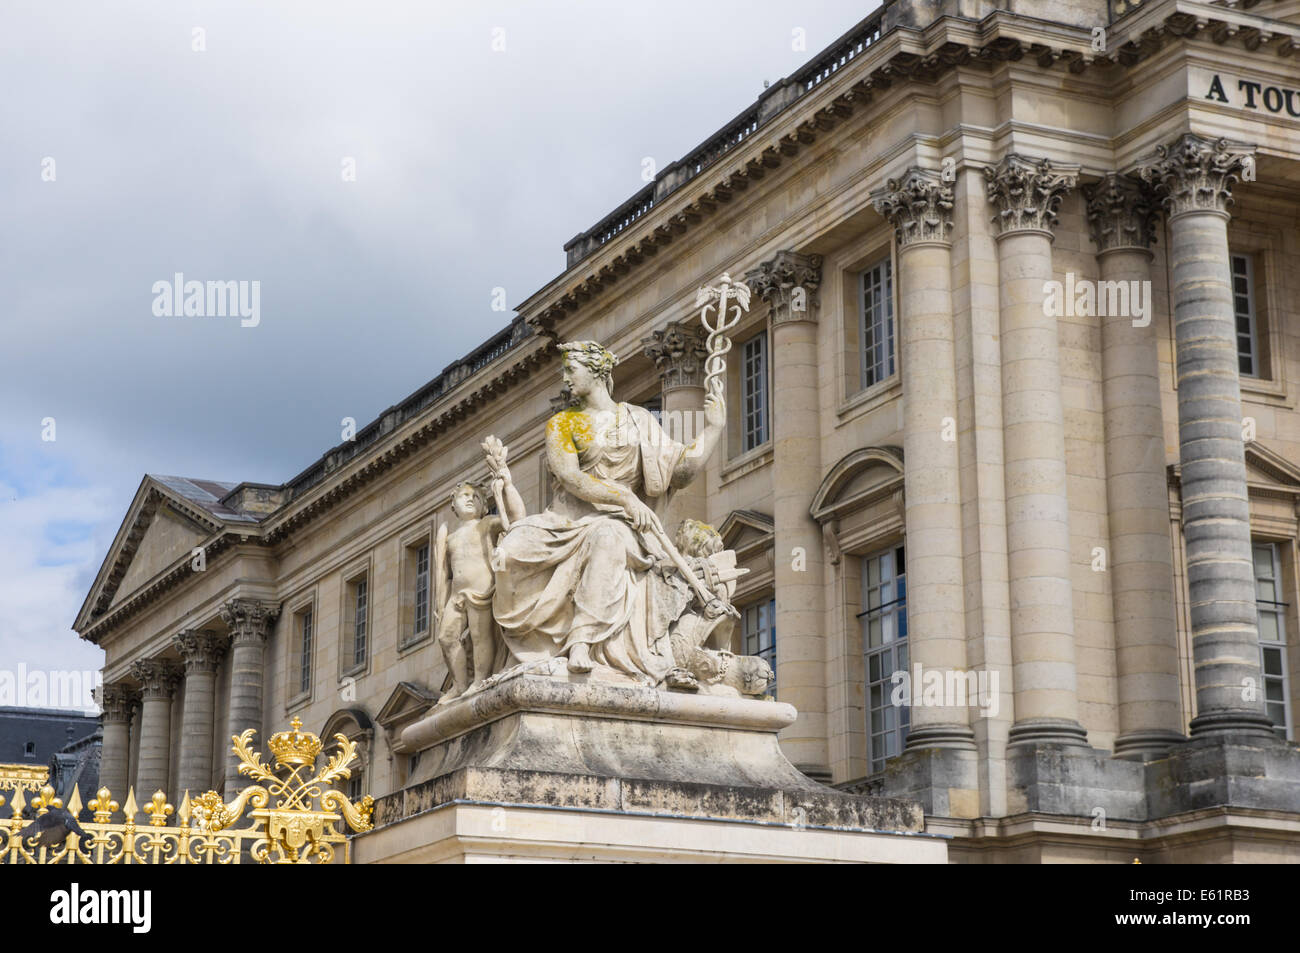 Statue à côté de la porte d'or du château de Versailles Château de Versailles [ ] en France Banque D'Images